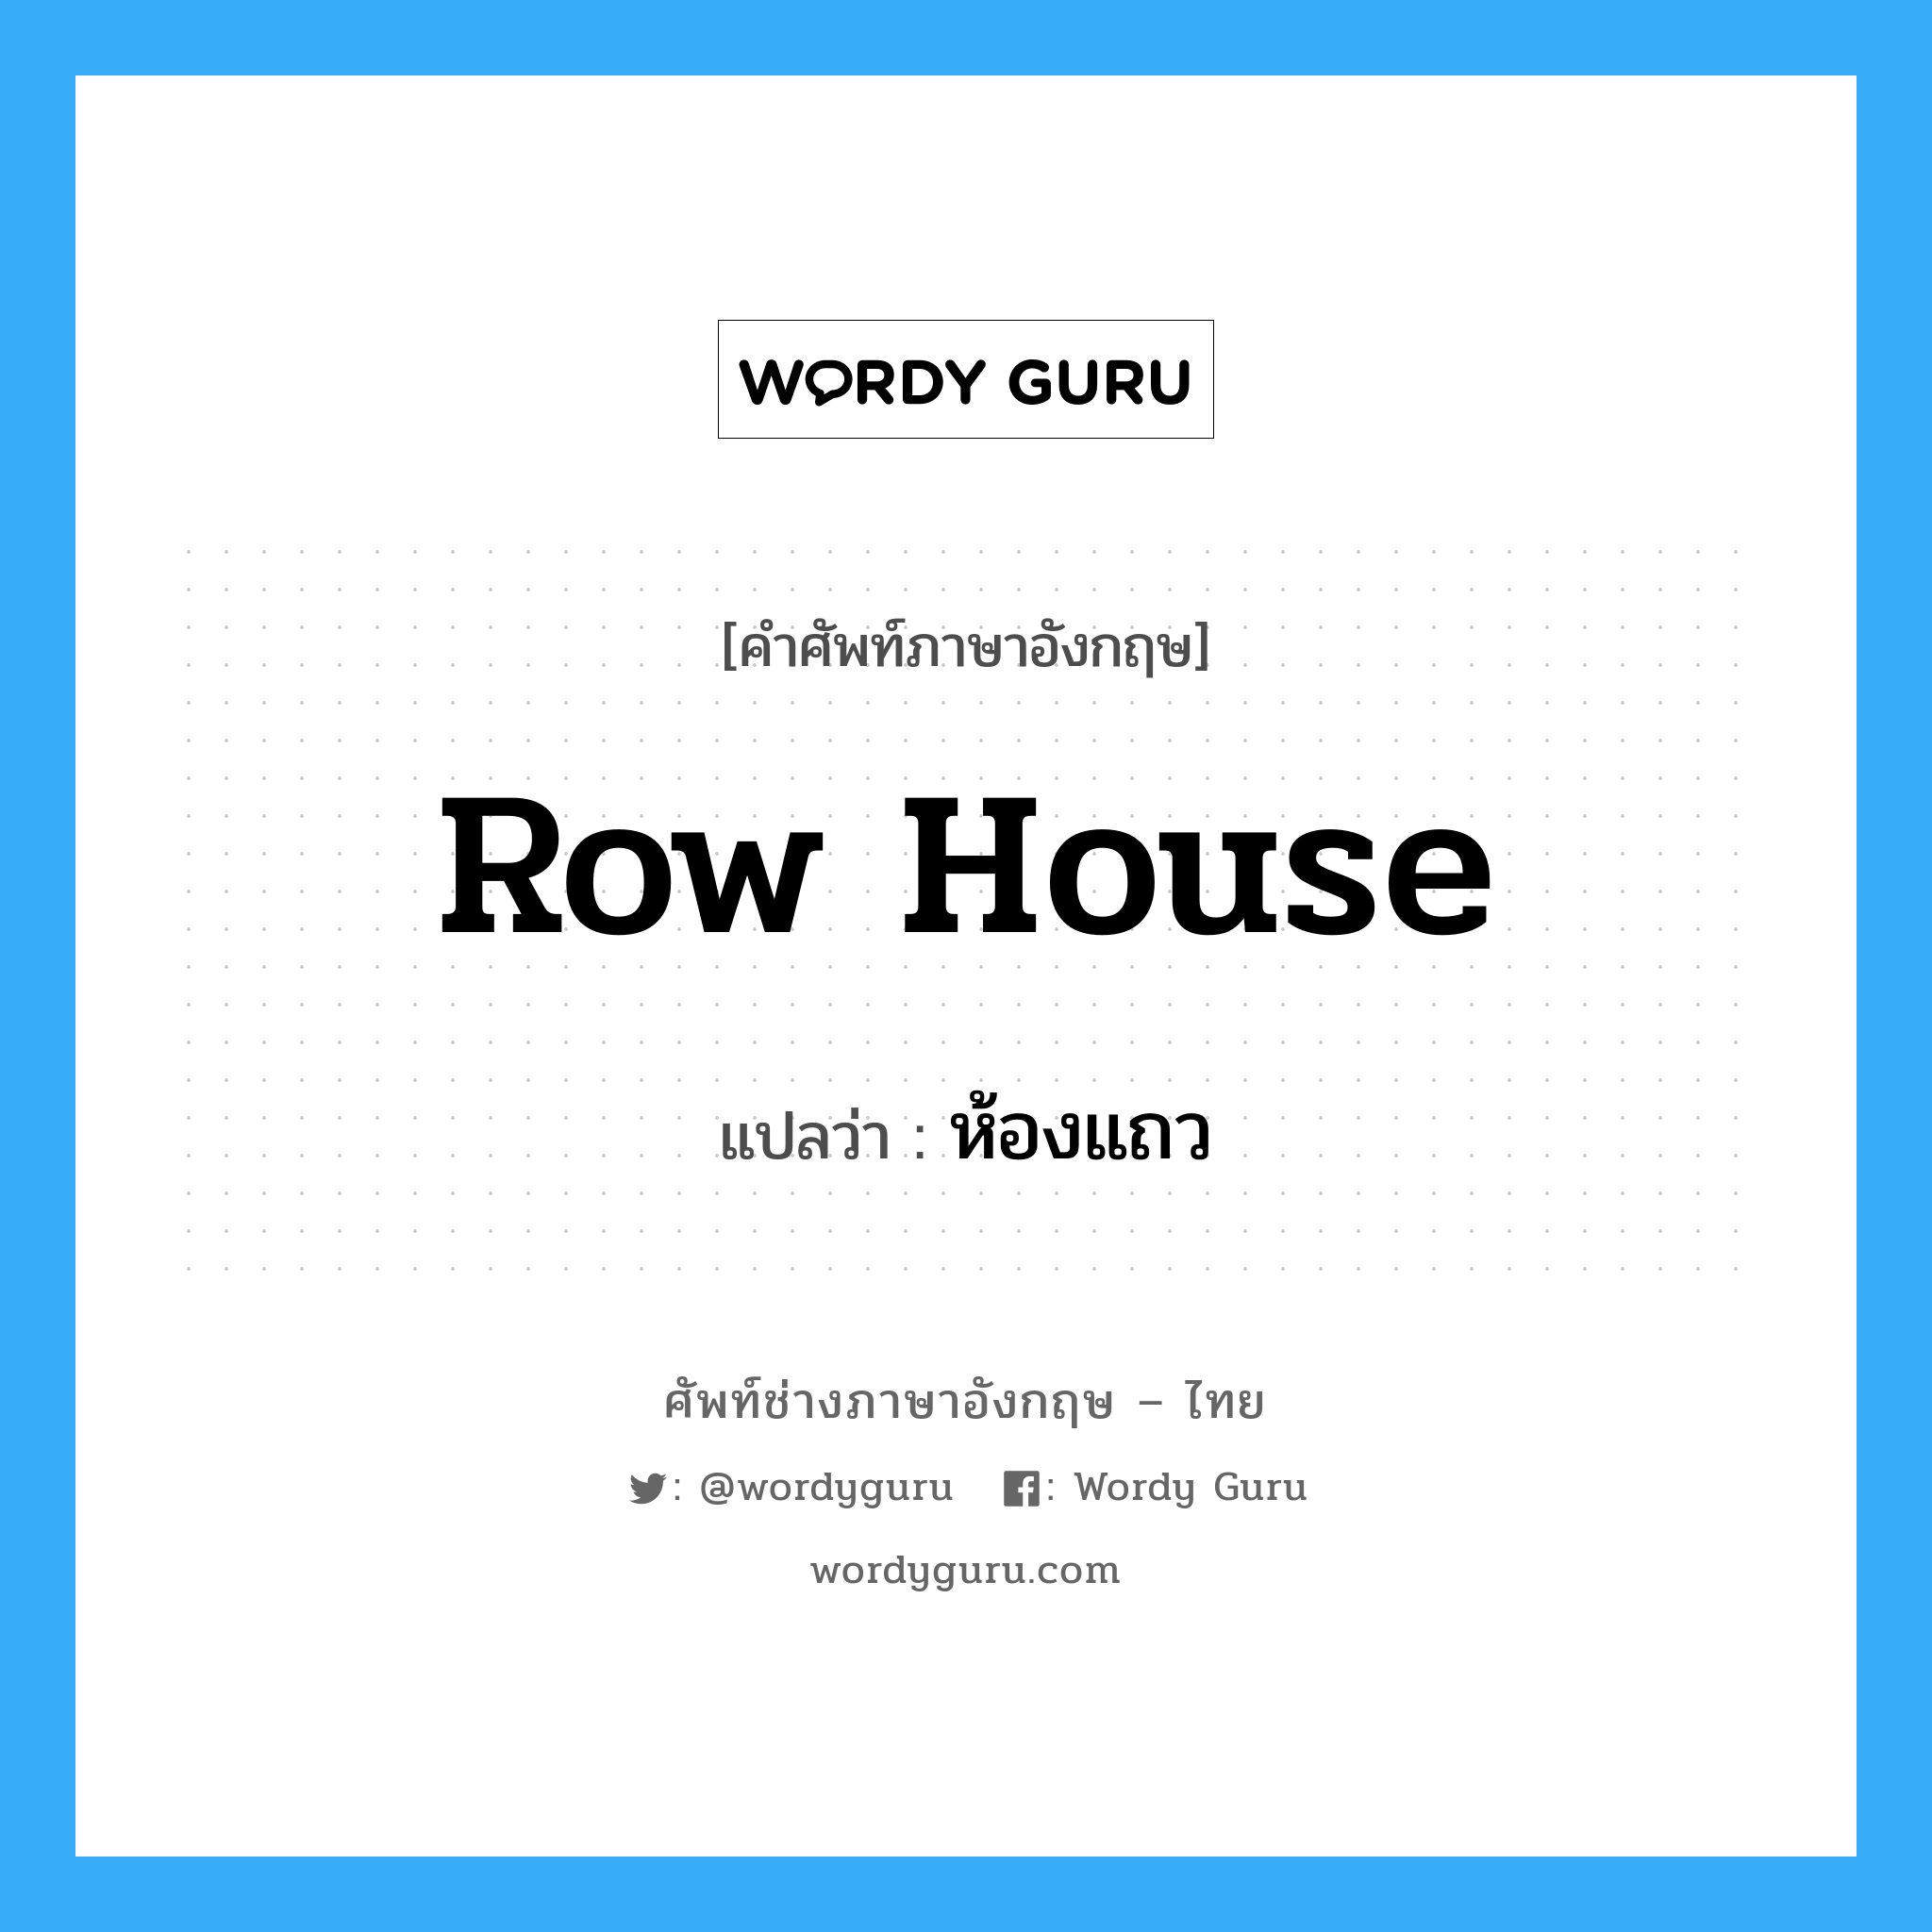 row house แปลว่า?, คำศัพท์ช่างภาษาอังกฤษ - ไทย row house คำศัพท์ภาษาอังกฤษ row house แปลว่า ห้องแถว